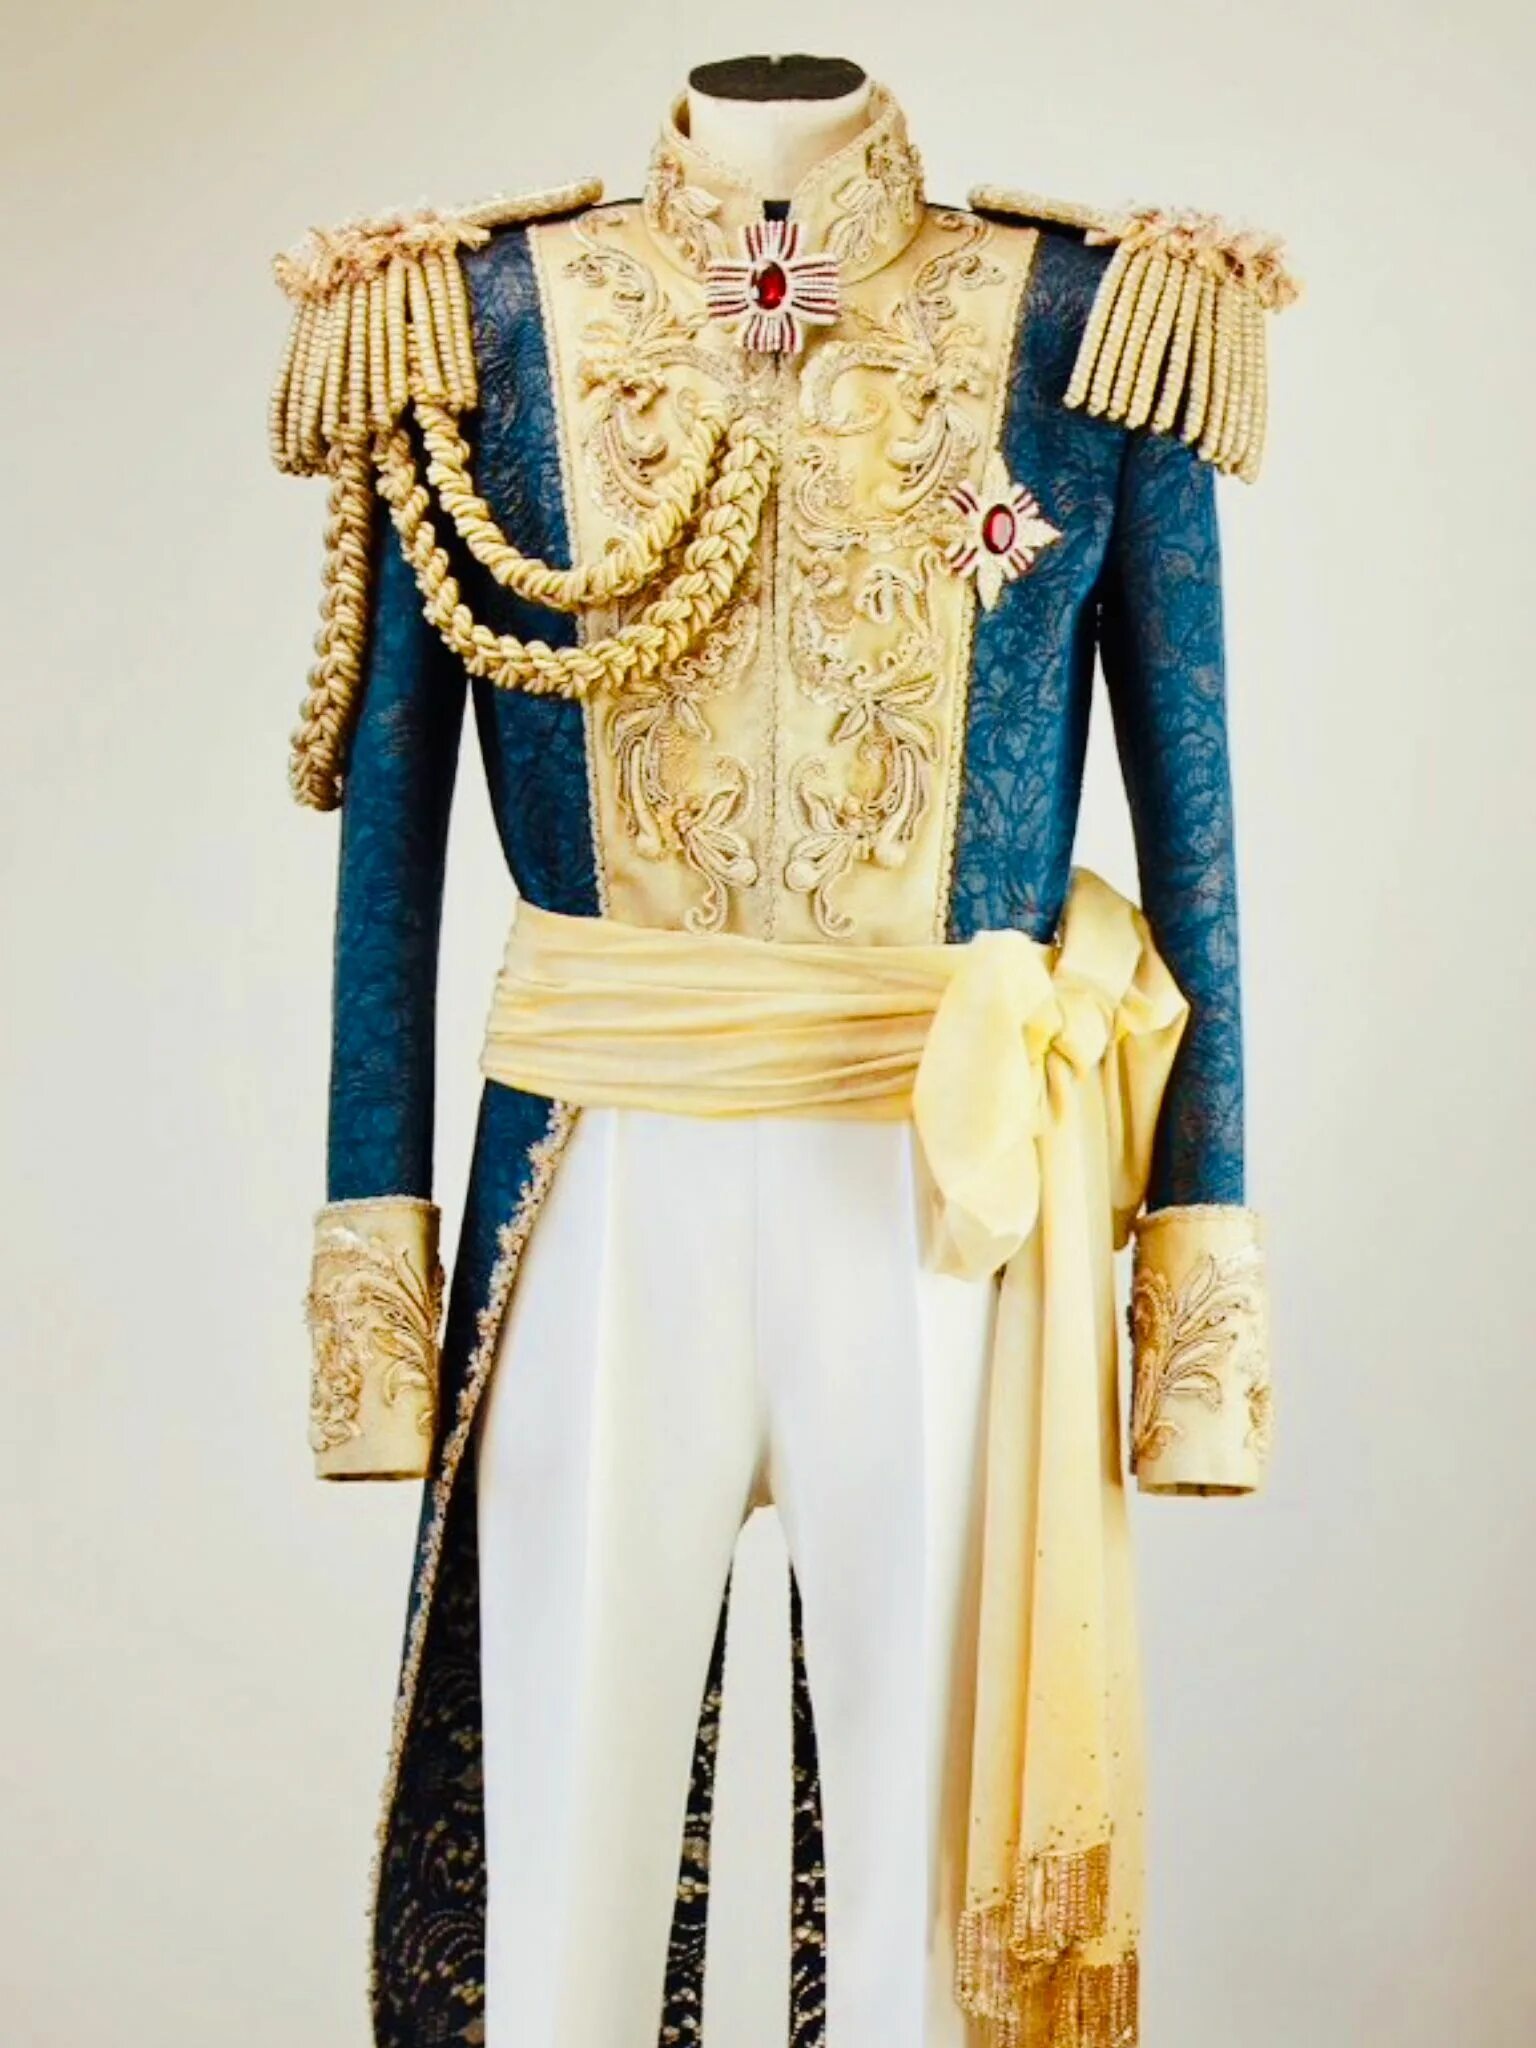 Царские одежды 5 букв. Королевская одежда. Царская одежда. Императорская одежда. Царское одеяние.